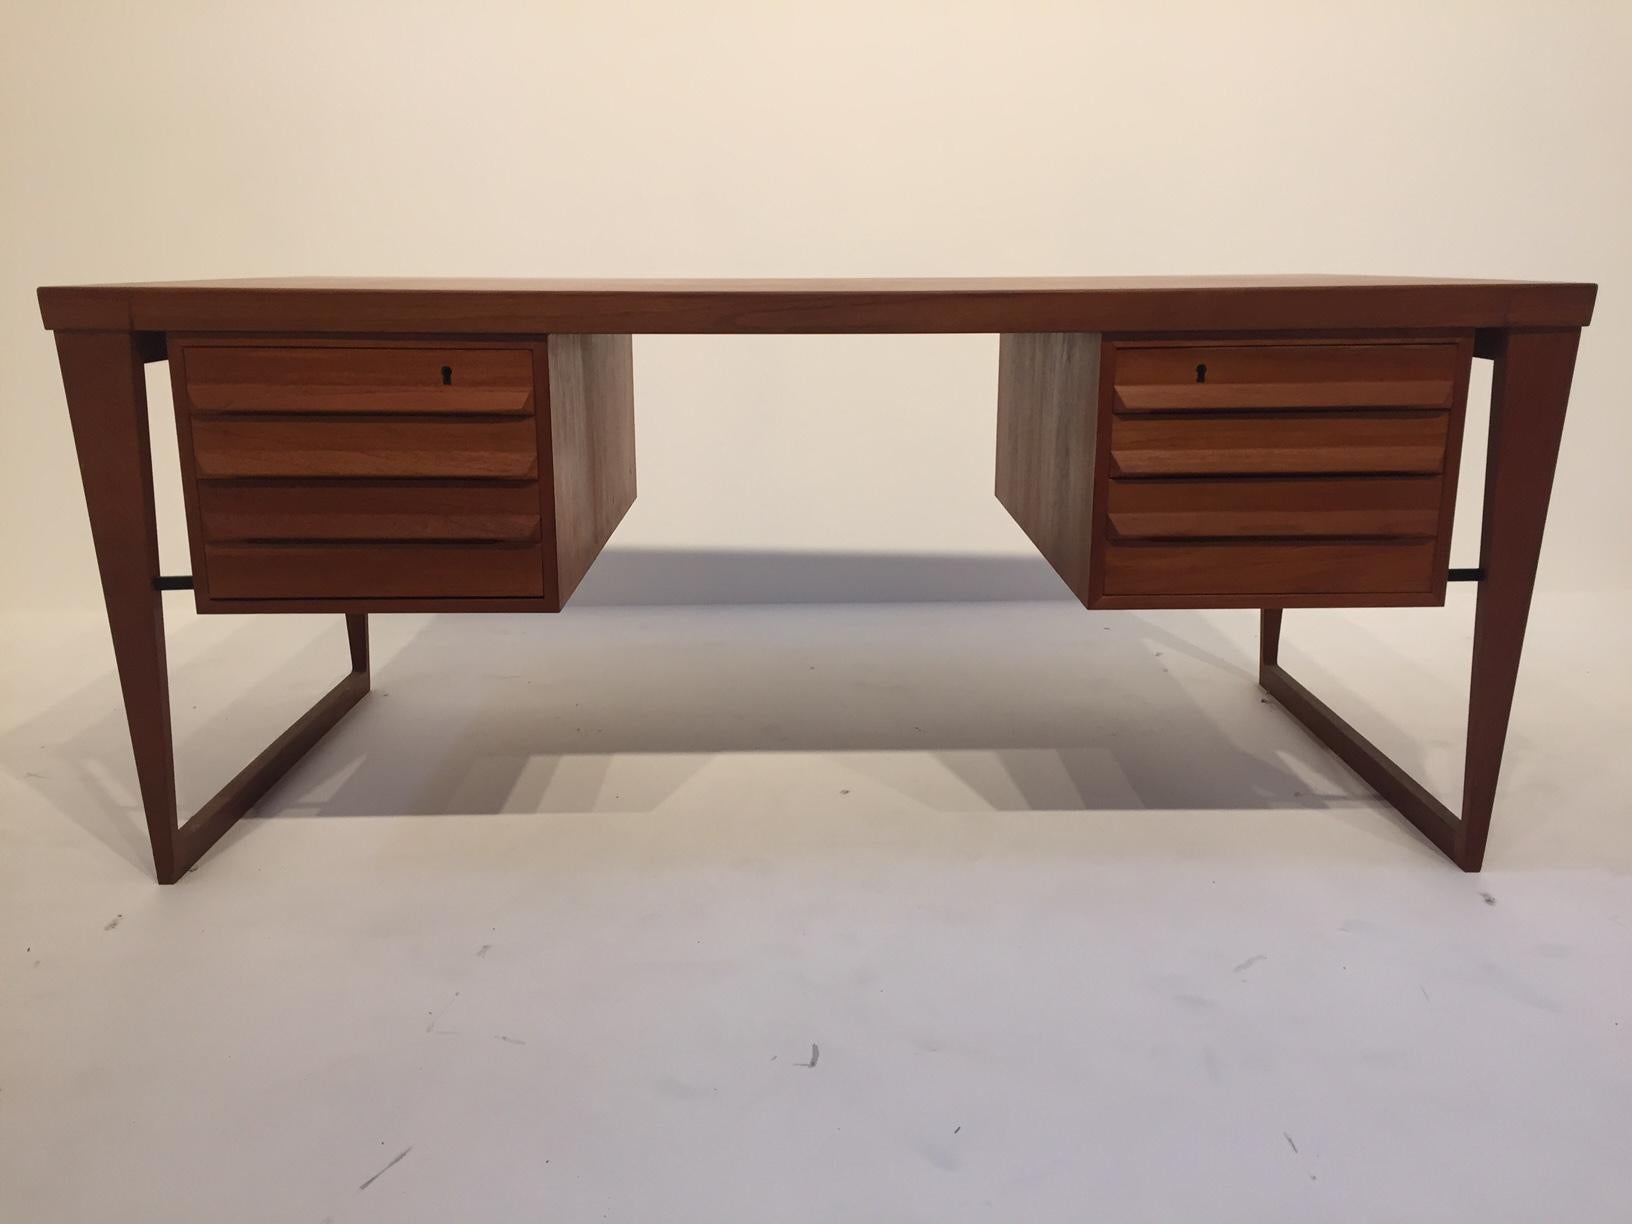 Schreibtisch Modell 70 - Dänemark Design.
Das Teakholz ist gut erhalten und hat eine schöne warme Farbe.